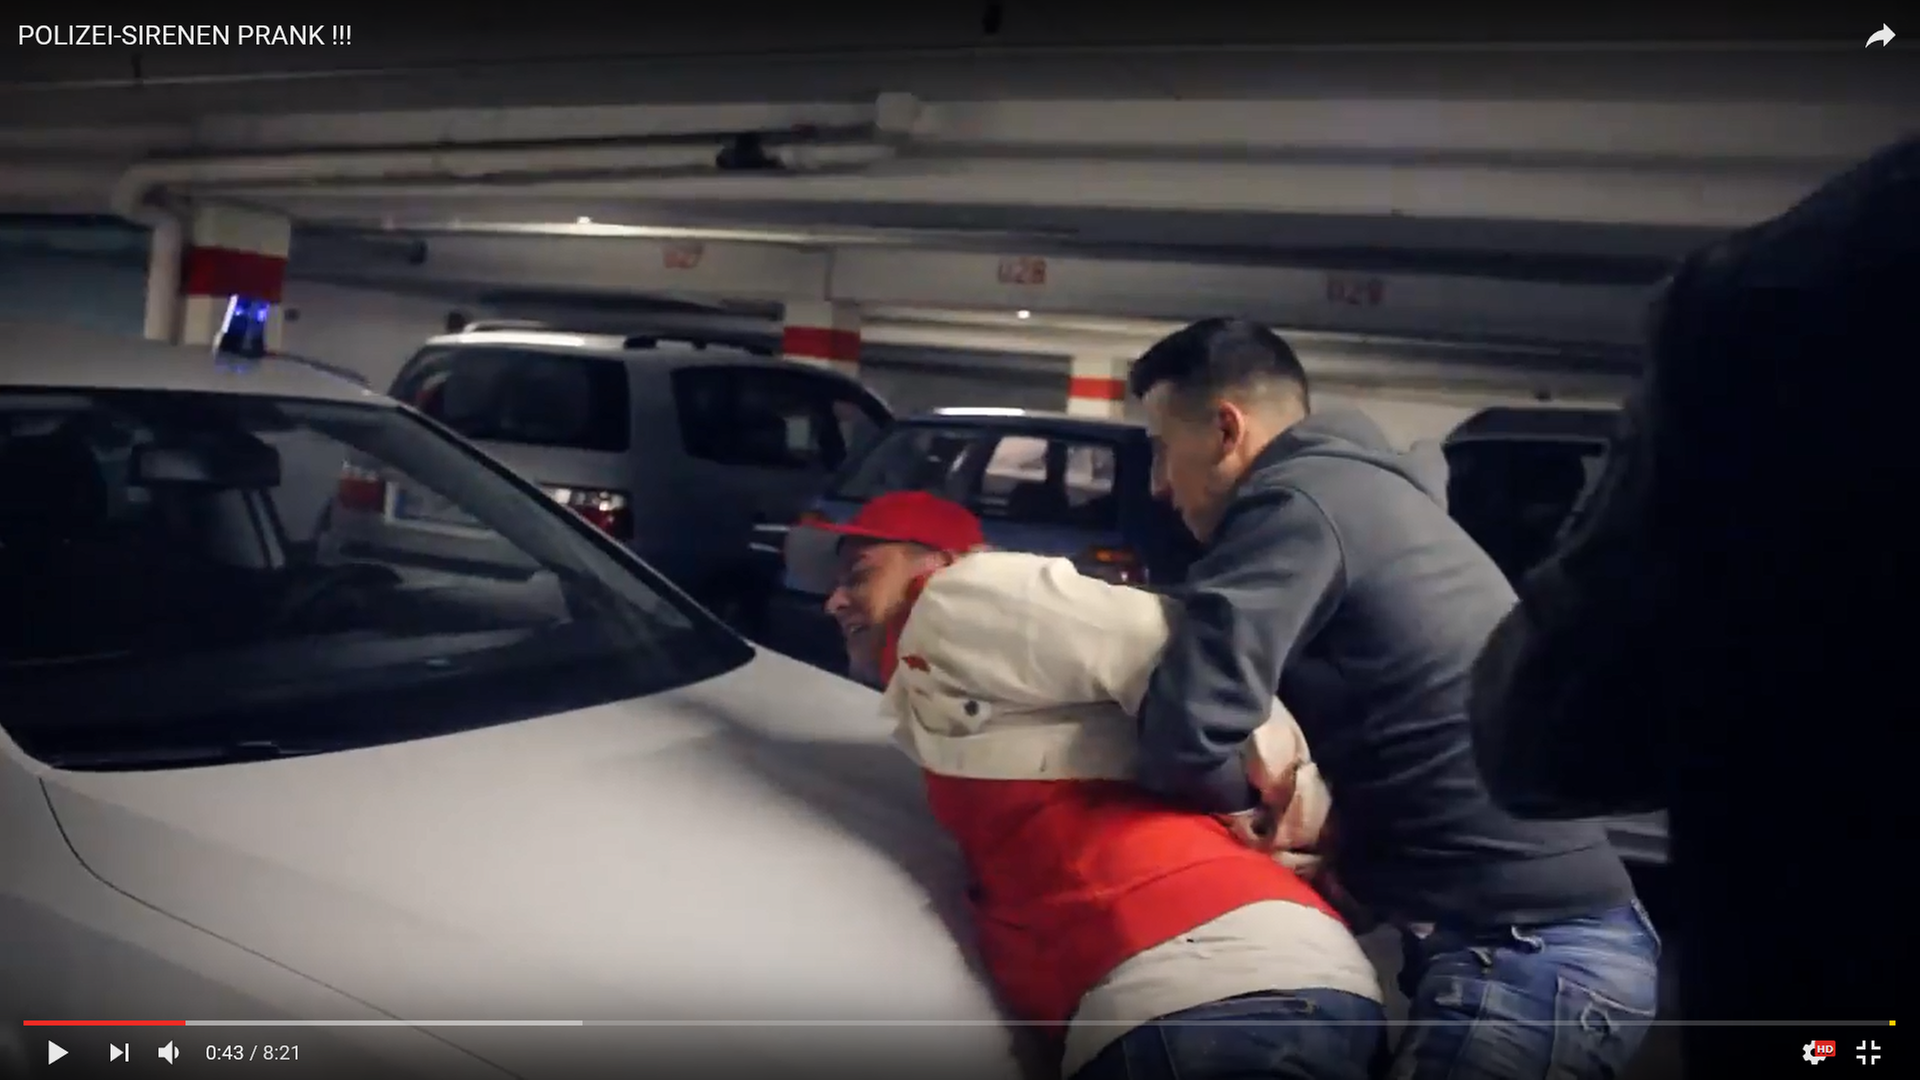 Leon Machère wird von seinen Kumpels in einer gestellten Szene auf die Motorhaube seines Wagens gedrückt (Bild: Screenshot aus dem YouTube Video "POLIZEI-SIRENEN PRANK !!!" von Leon Machère)